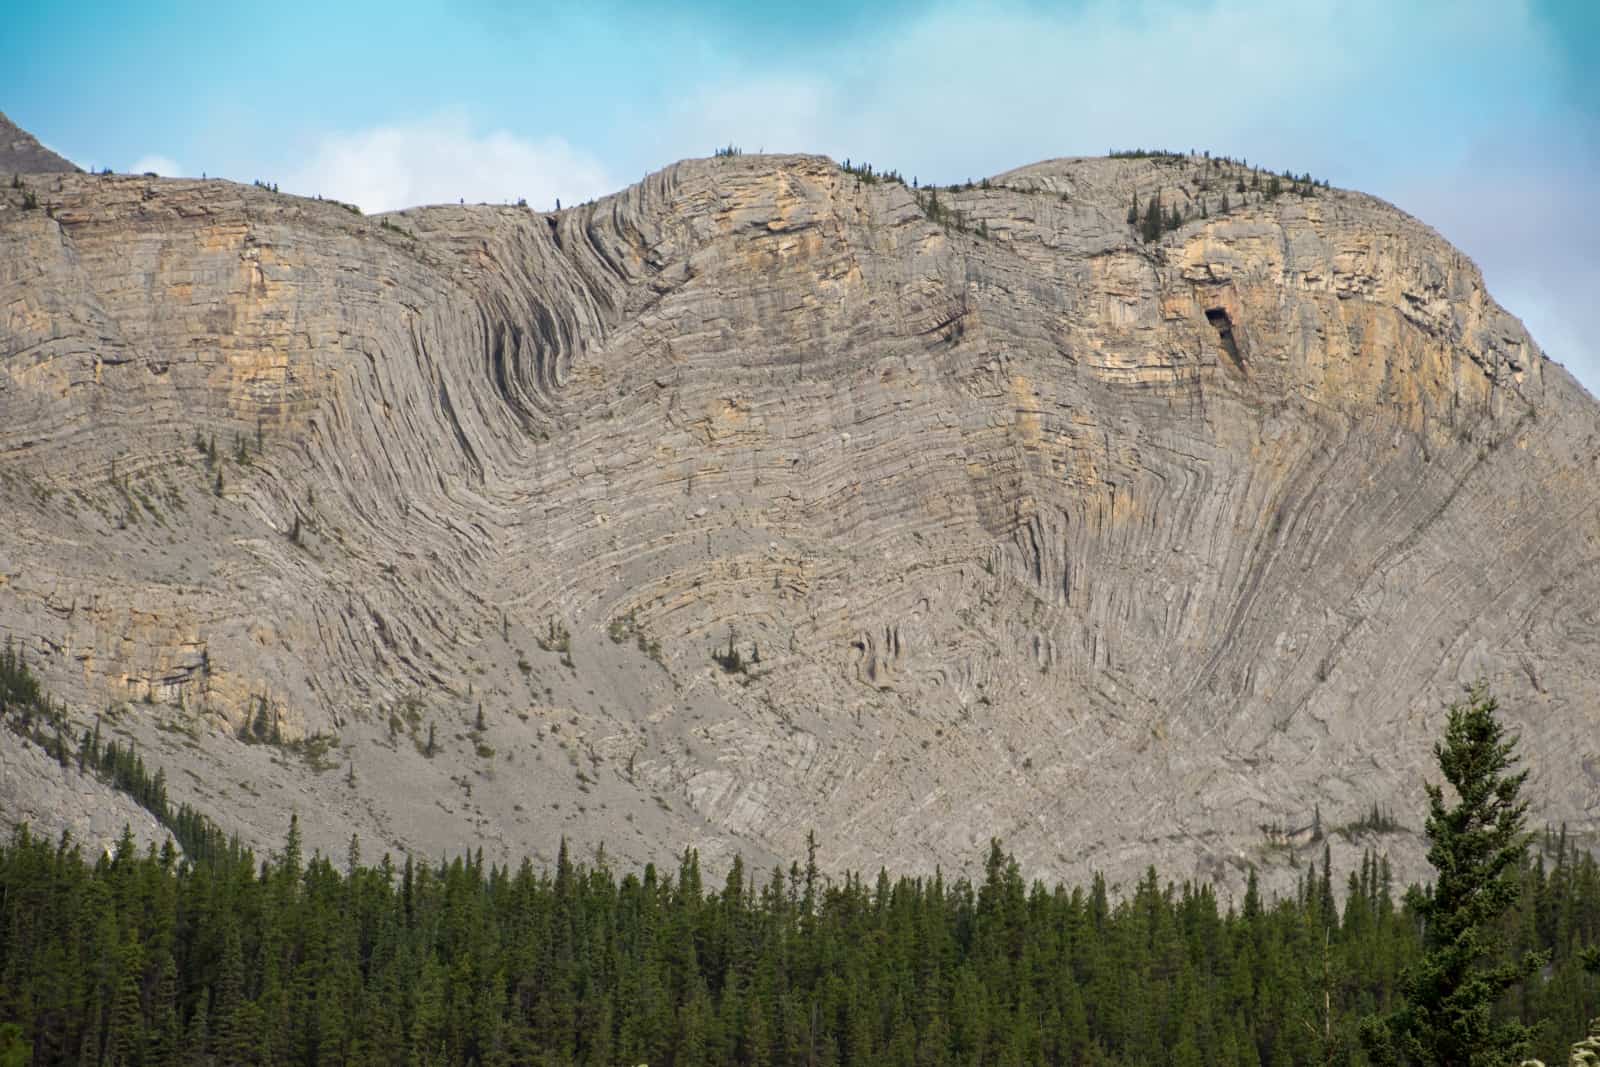 Welch unglaublichen Kräfte haben hier gewirkt. Die Folded Mountains in Northern BC. Foto Daniela Ganz